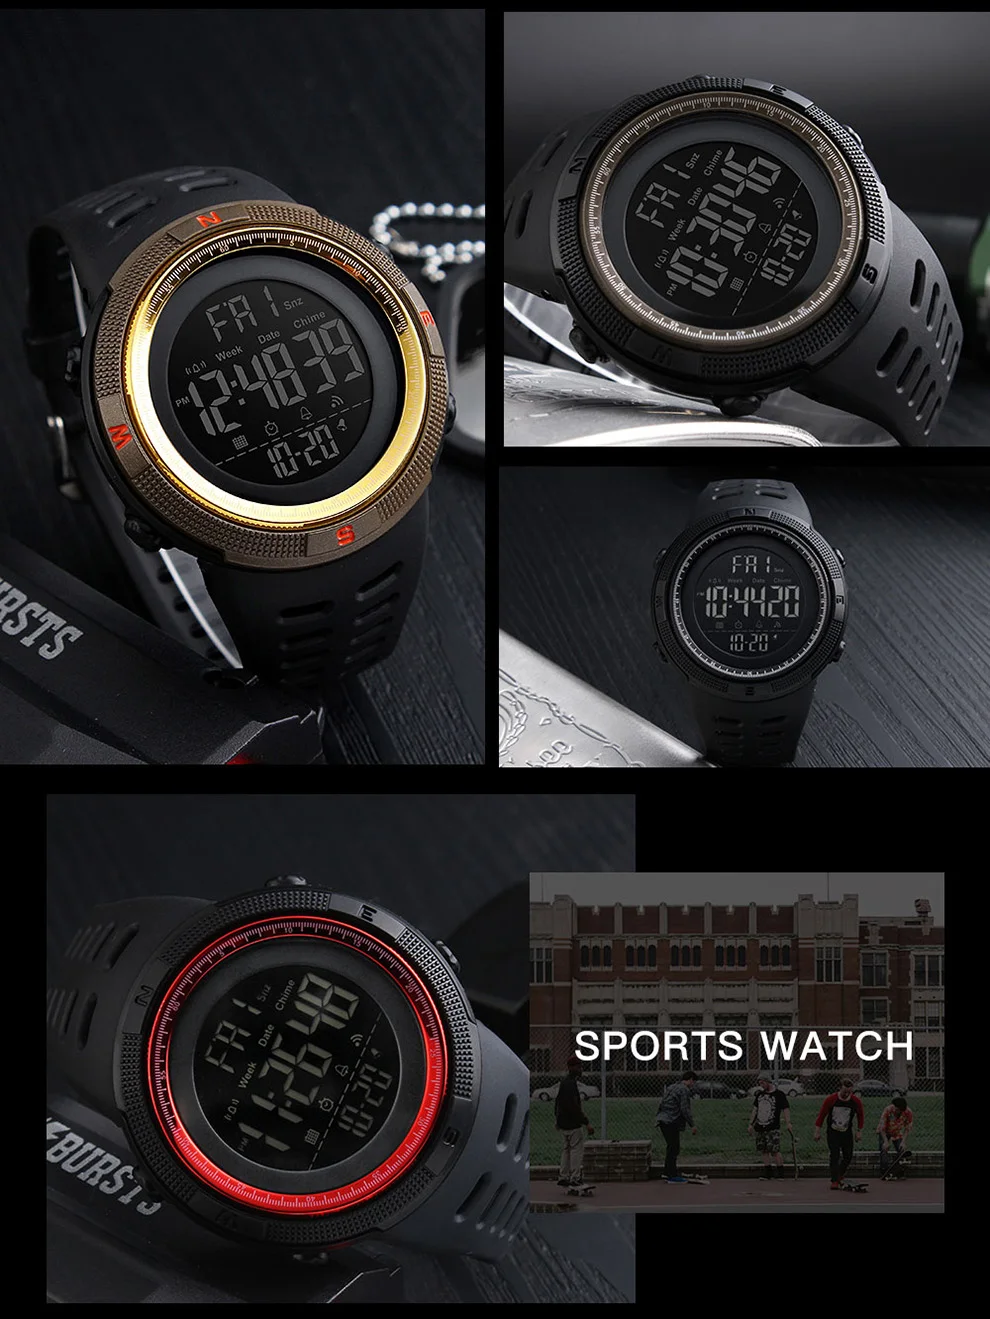 Плавание Дайвинг Chrono цифровые часы для мужчин s Спорт обратного отсчета наручные часы для мужчин Мода 2 времени будильник часы мужские часы час